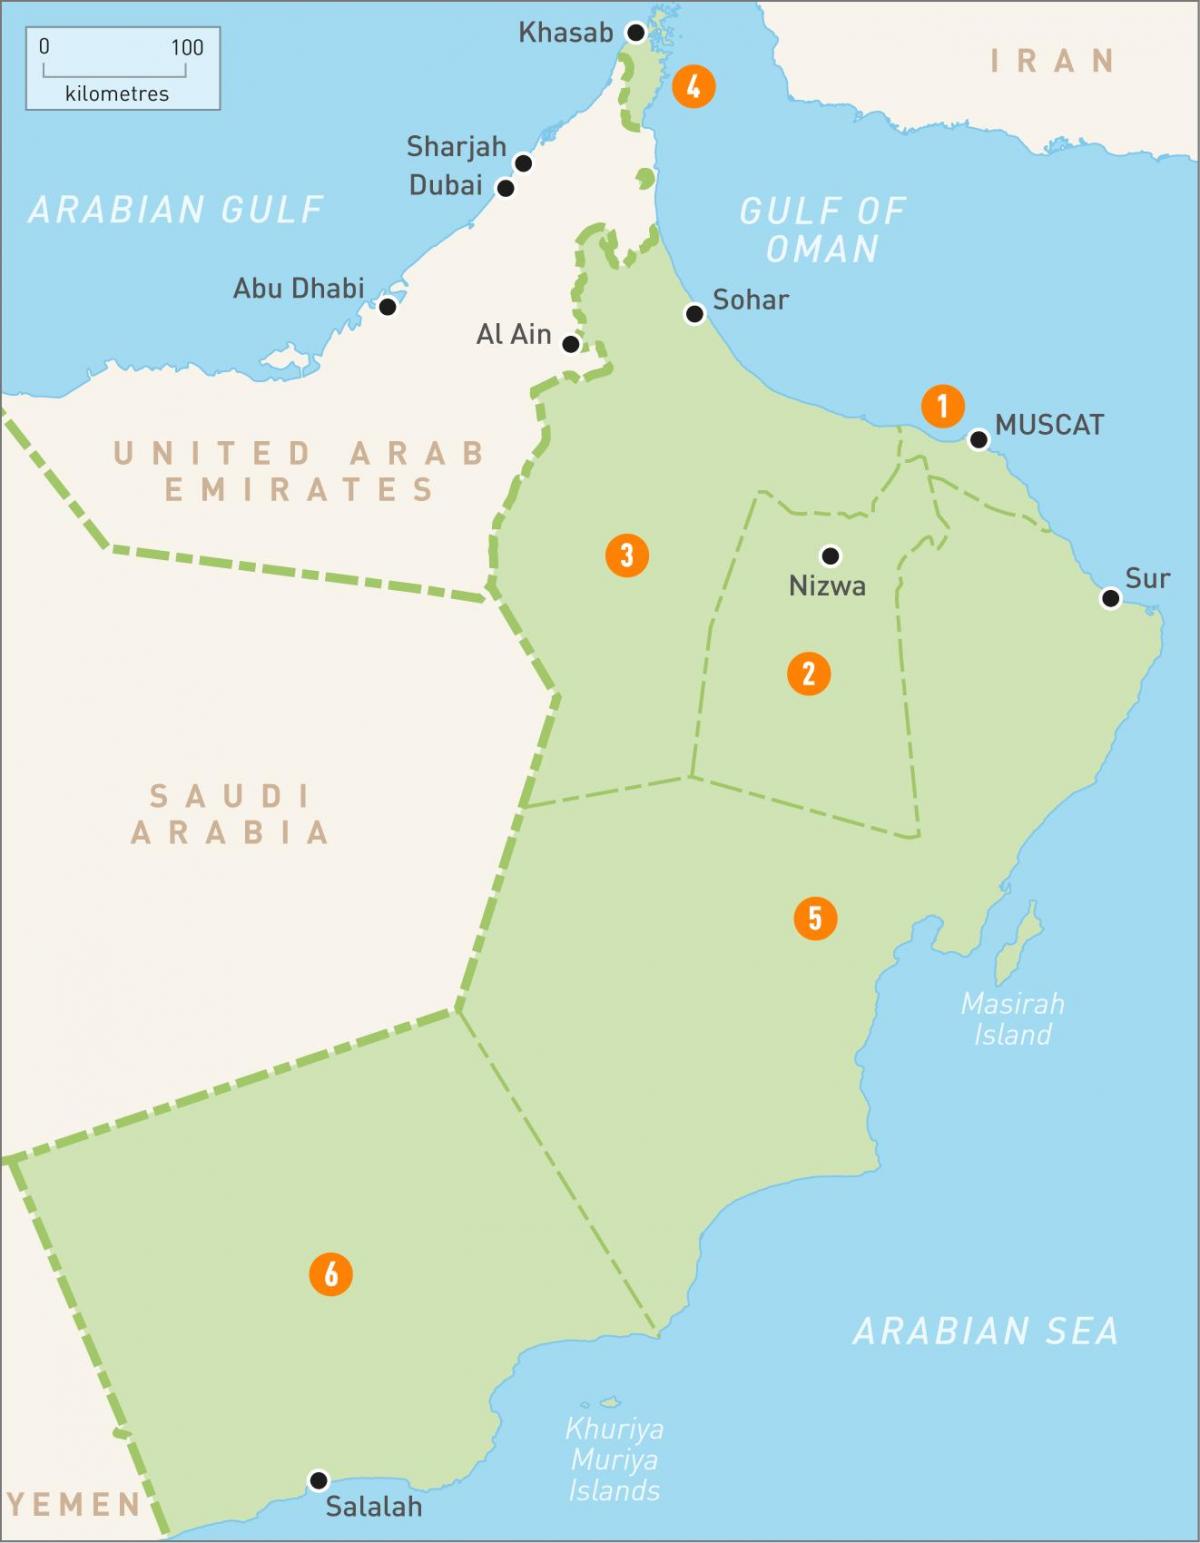 Oman kartan hd